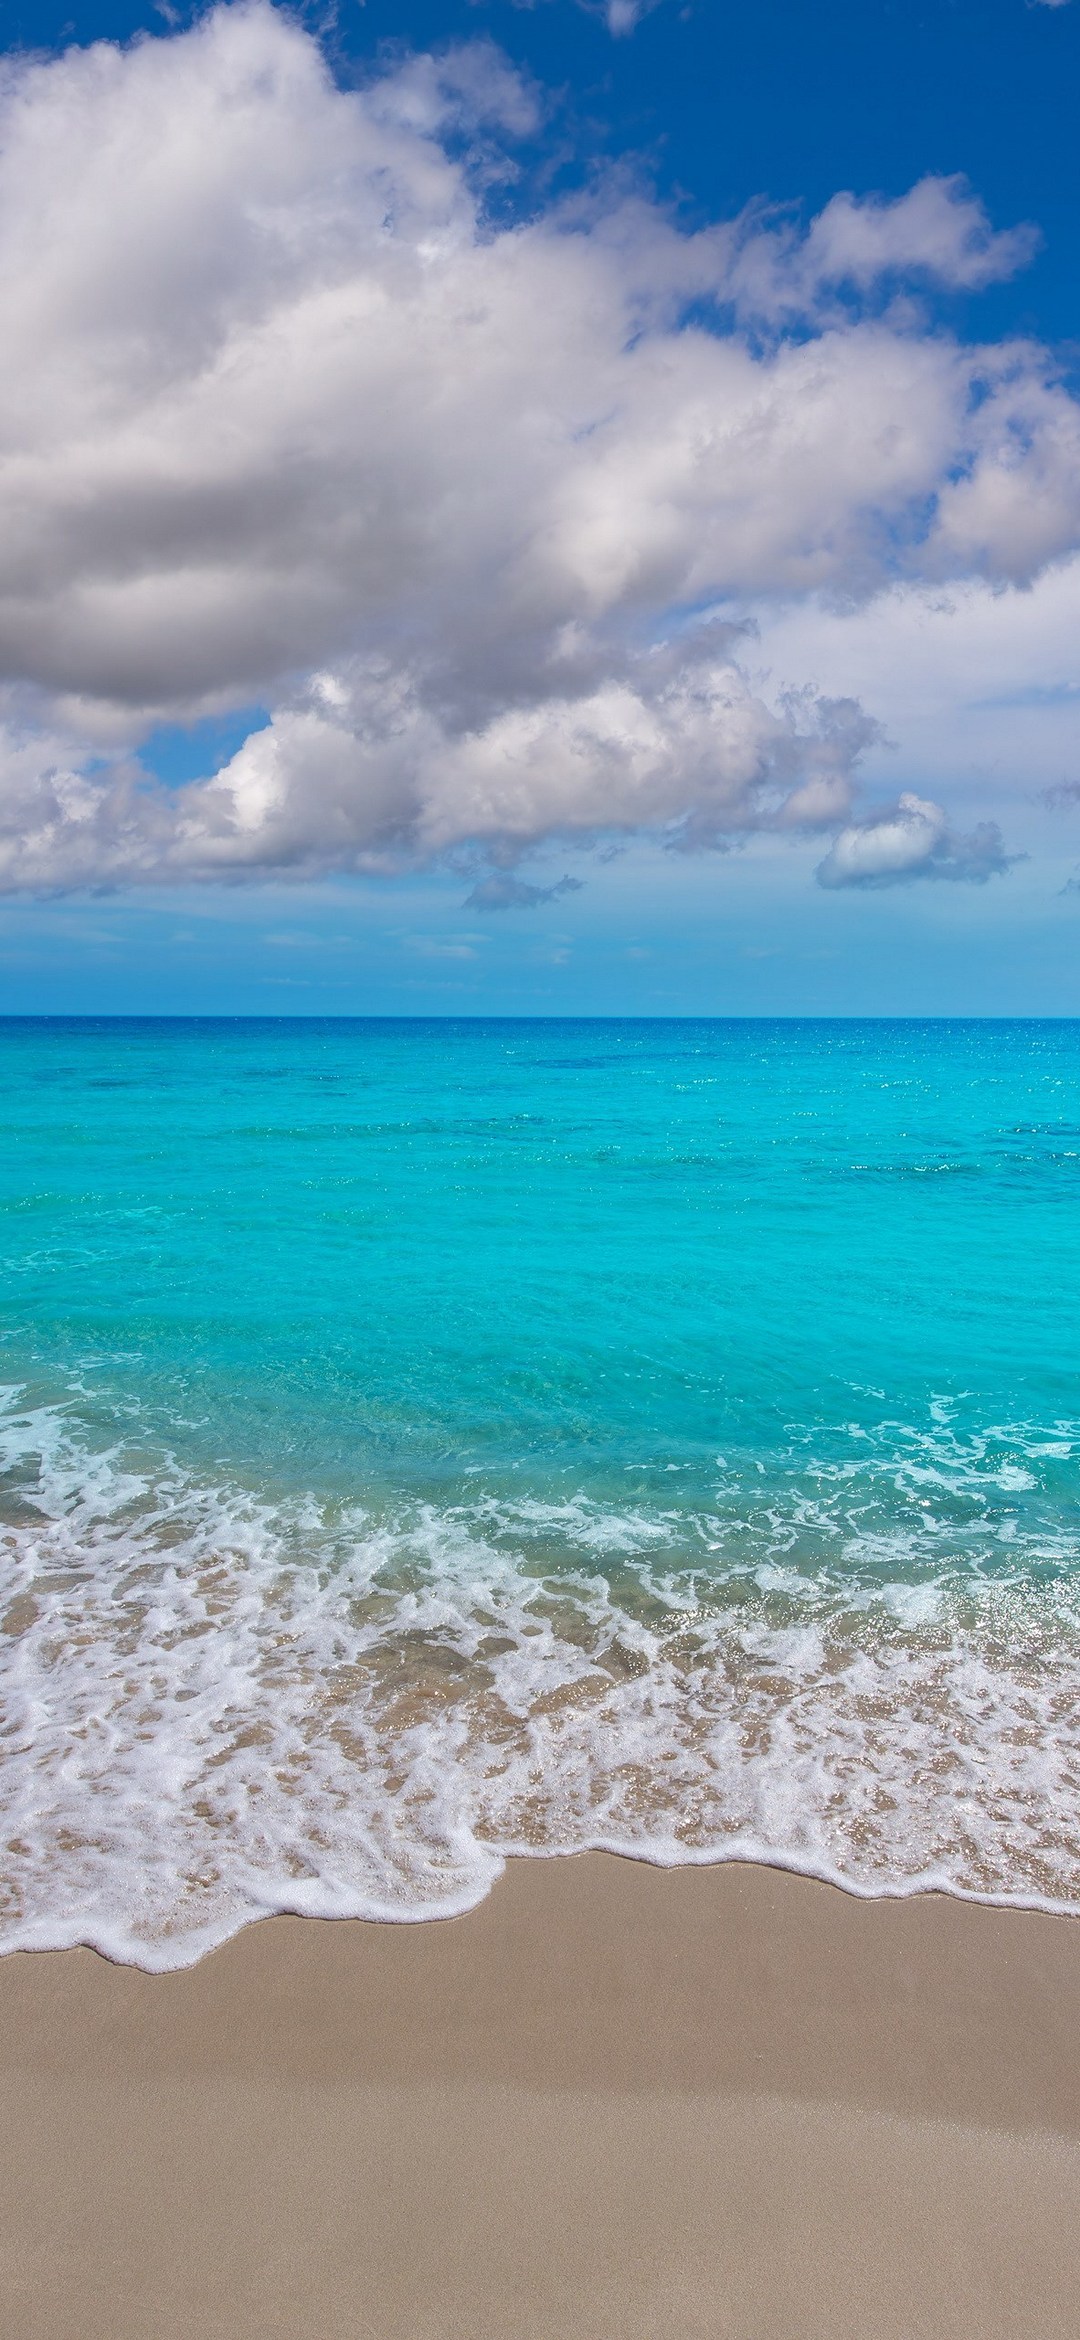 Beautiful Beaches In Hawaii Redmagic 5 Android スマホ壁紙 待ち受け スマラン